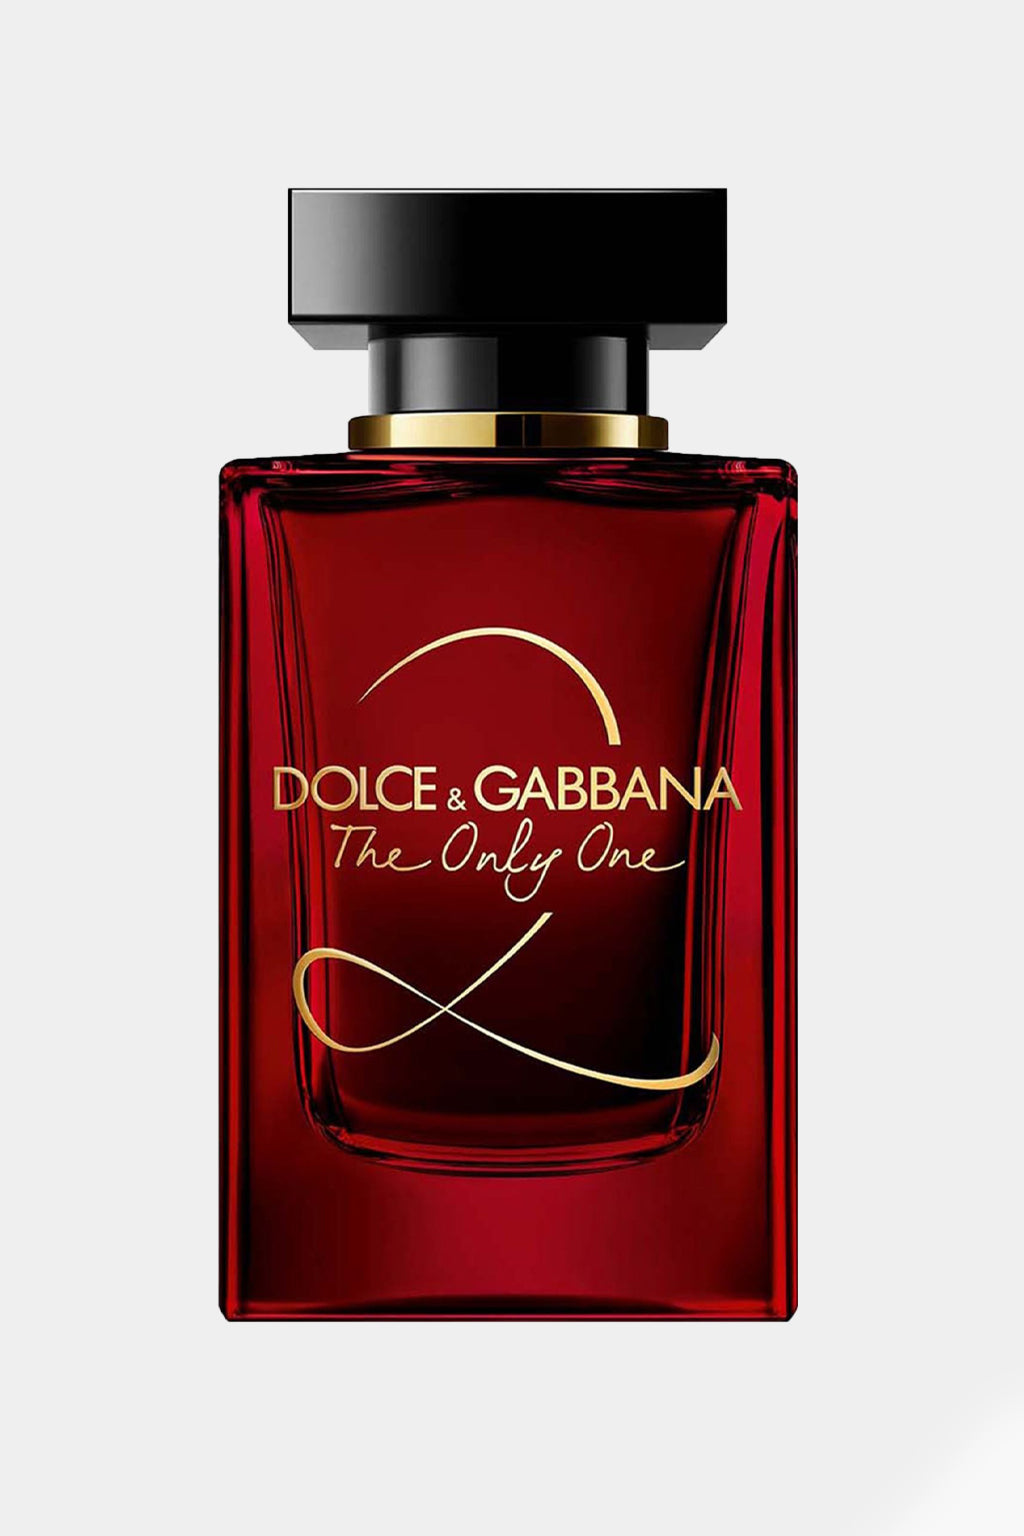 Dolce & Gabbana - The Only One 2 Eau de Parfum